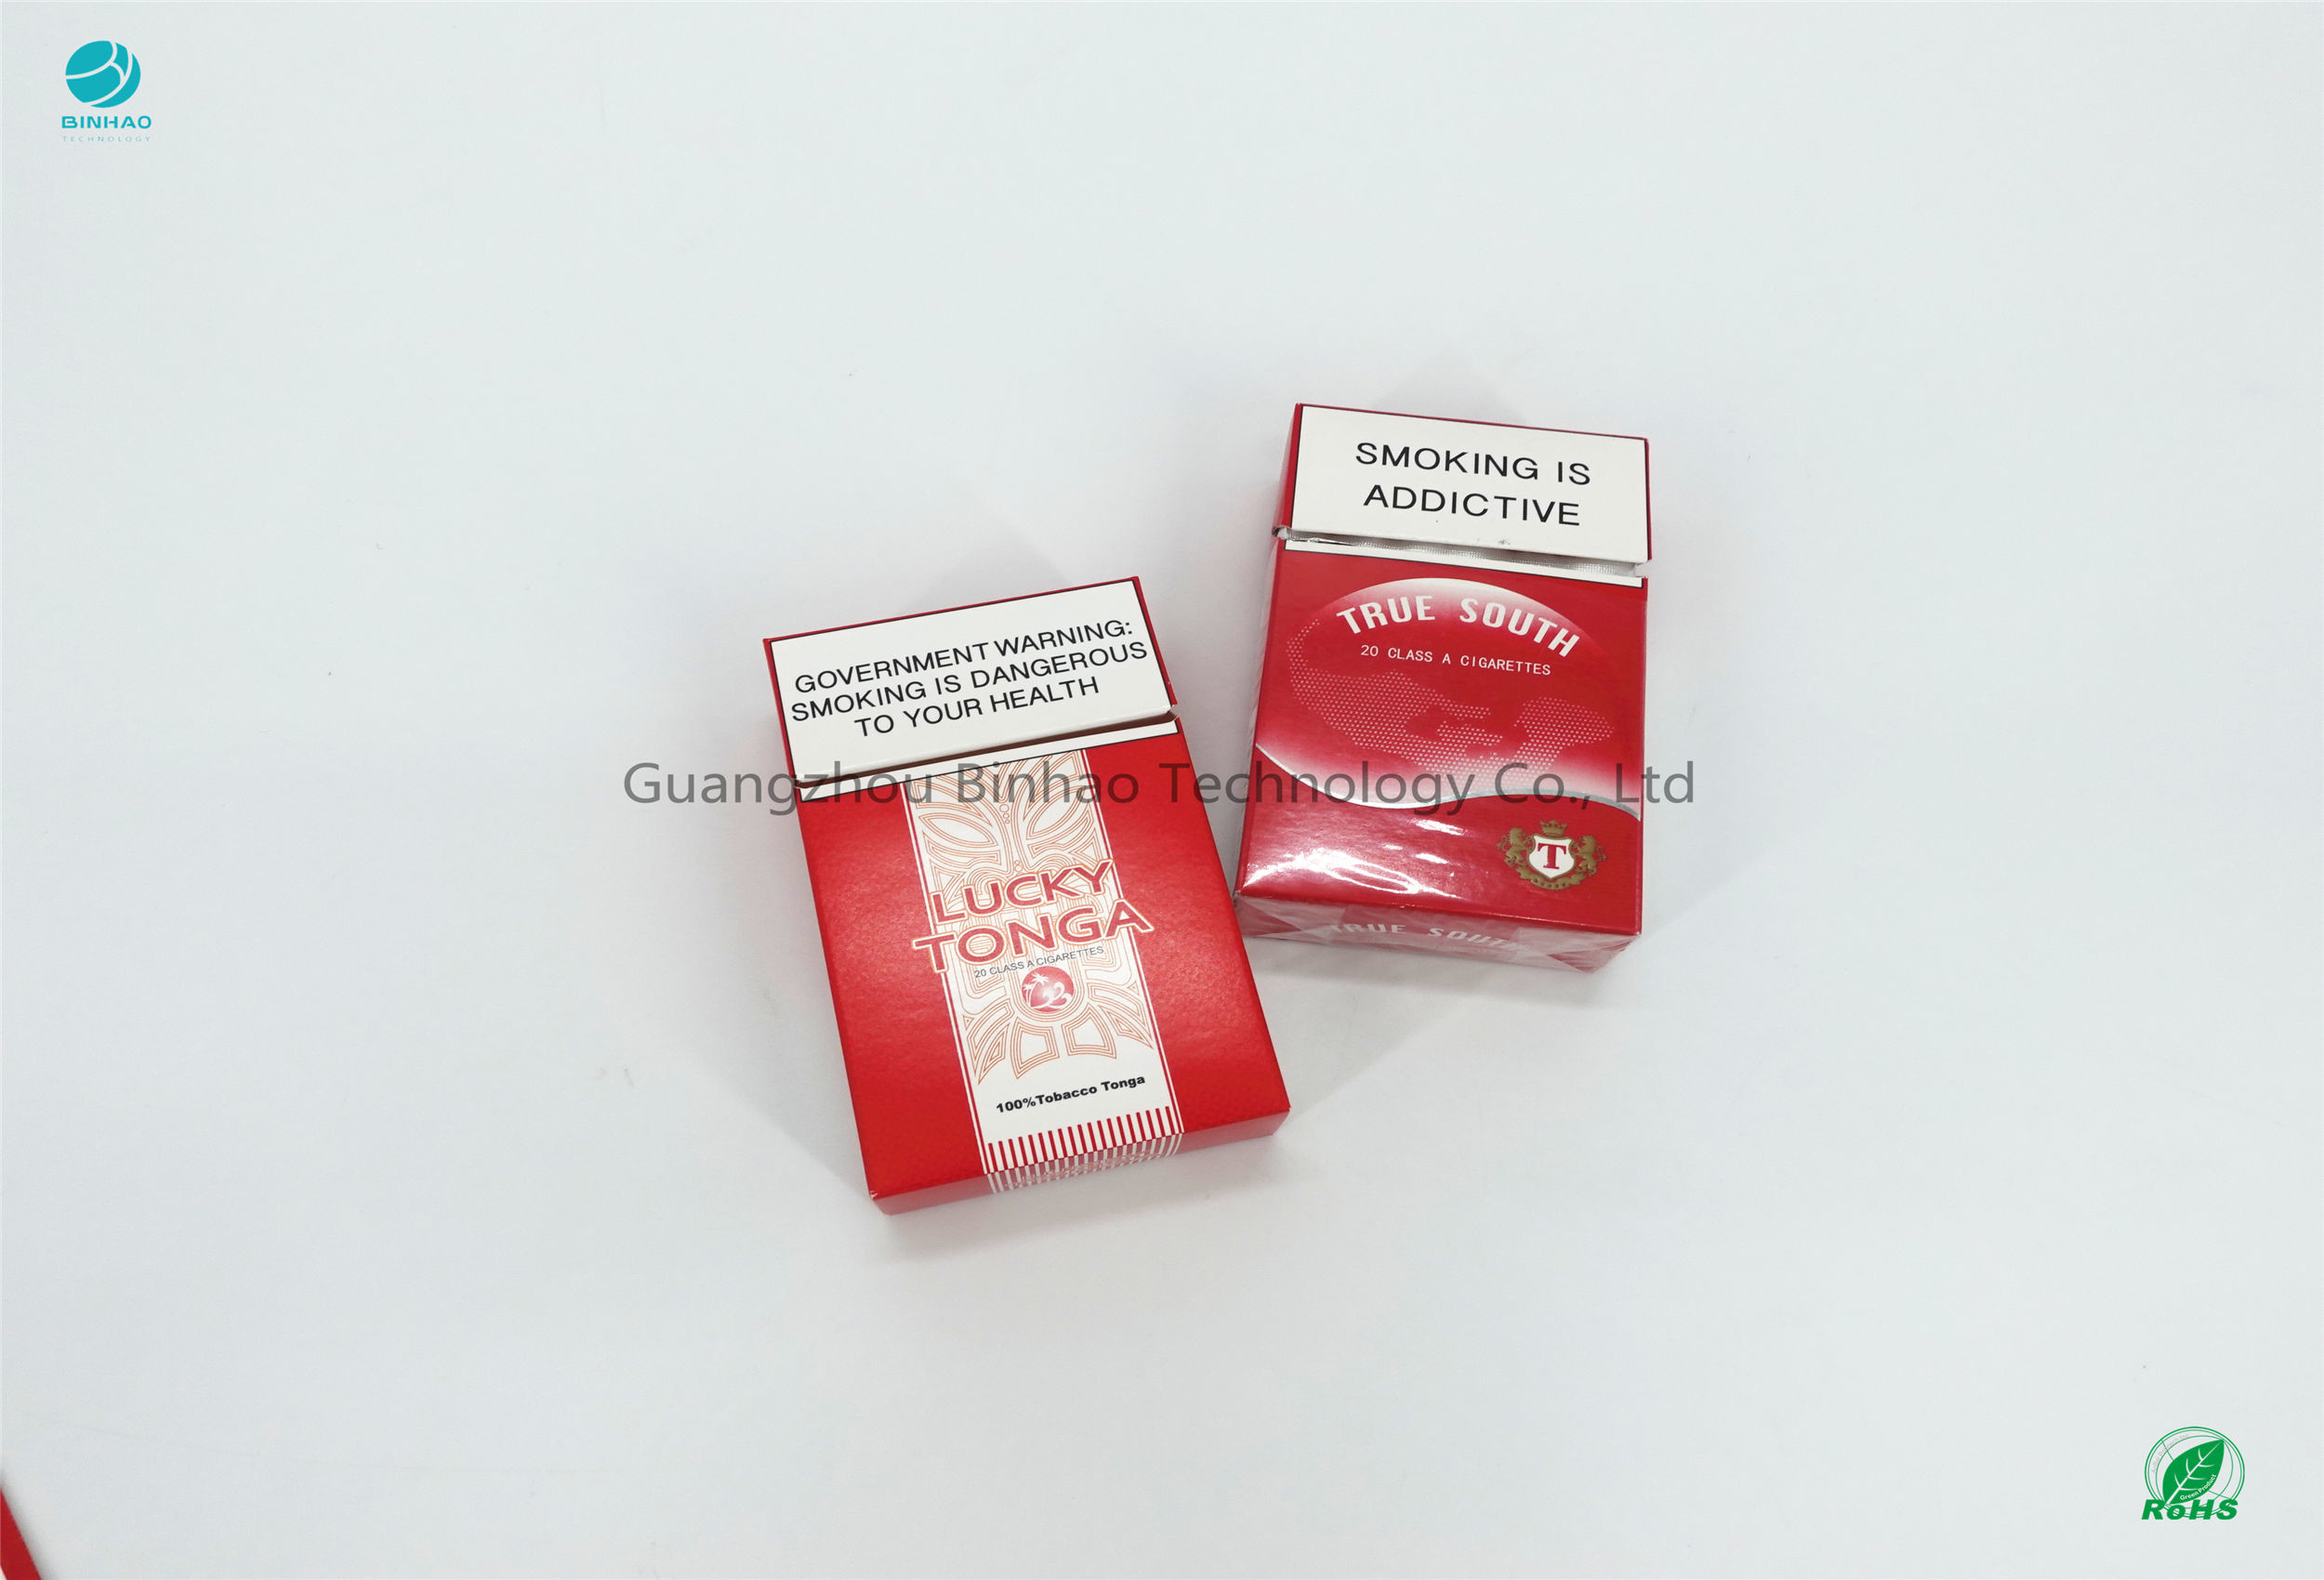 Офсетная печать коробки 225gsm сигареты низкопробная бумажная подгоняет дизайн и логотип